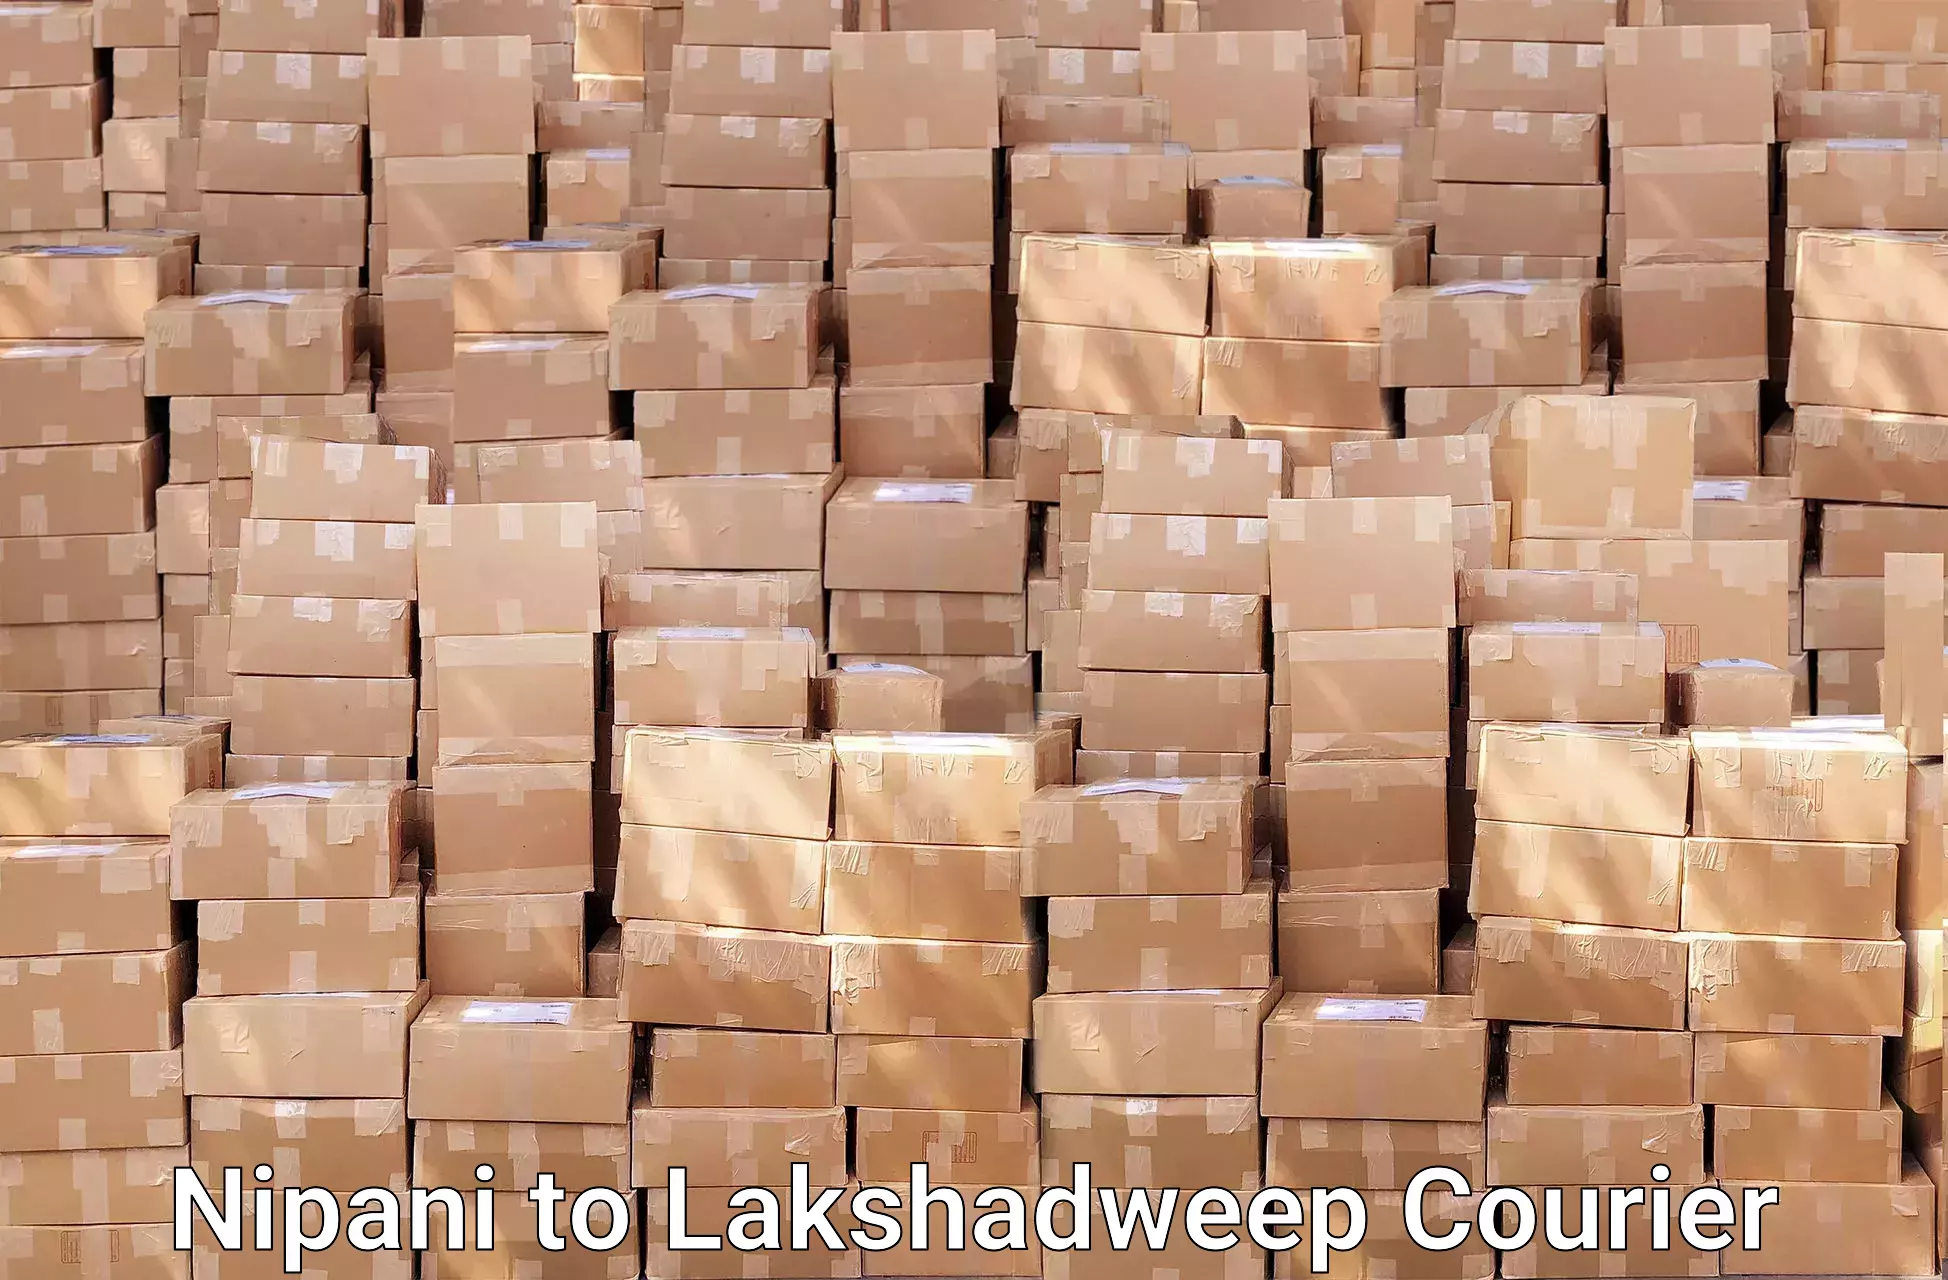 Furniture moving experts Nipani to Lakshadweep